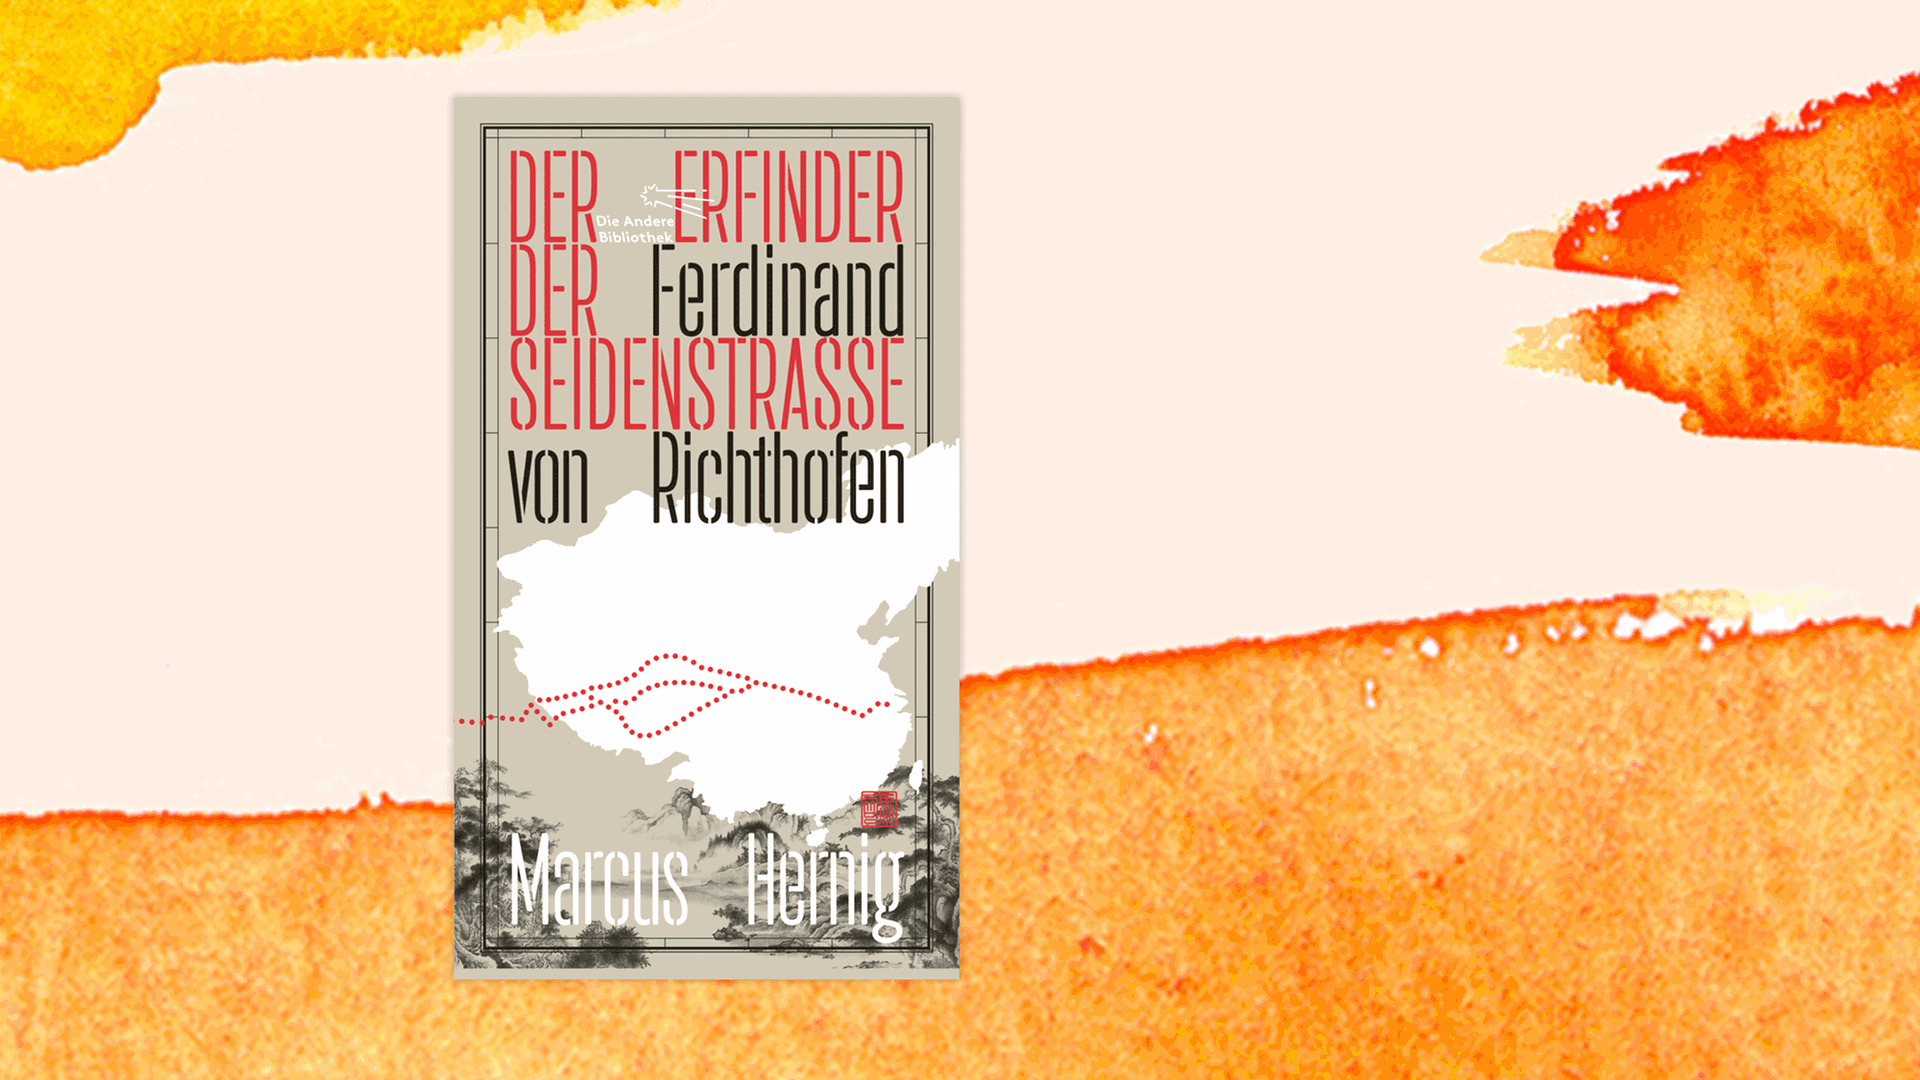 Cover von Marcus Hernigs Buch "Ferdinand von Richthofen. Der Erfinder der Seidenstraße".